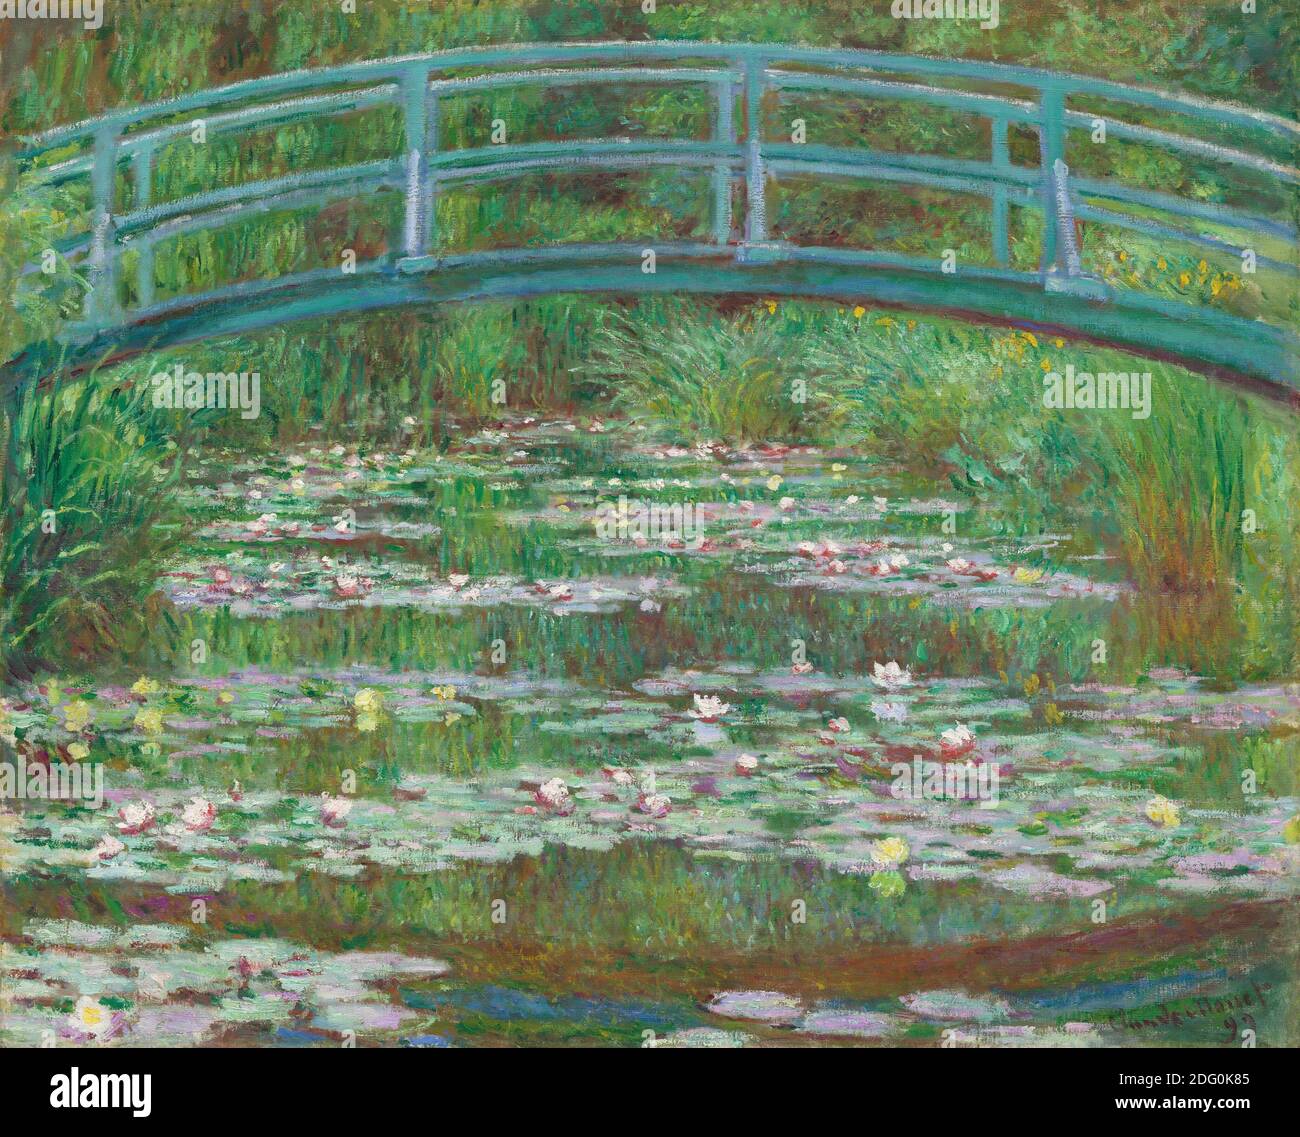 Titre: La passerelle japonaise Créateur: Claude Monet Date: 1899 Moyen: Huile sur toile dimension: 81.3 x 101.6 cm lieu: Galerie nationale d'art, Washington Banque D'Images